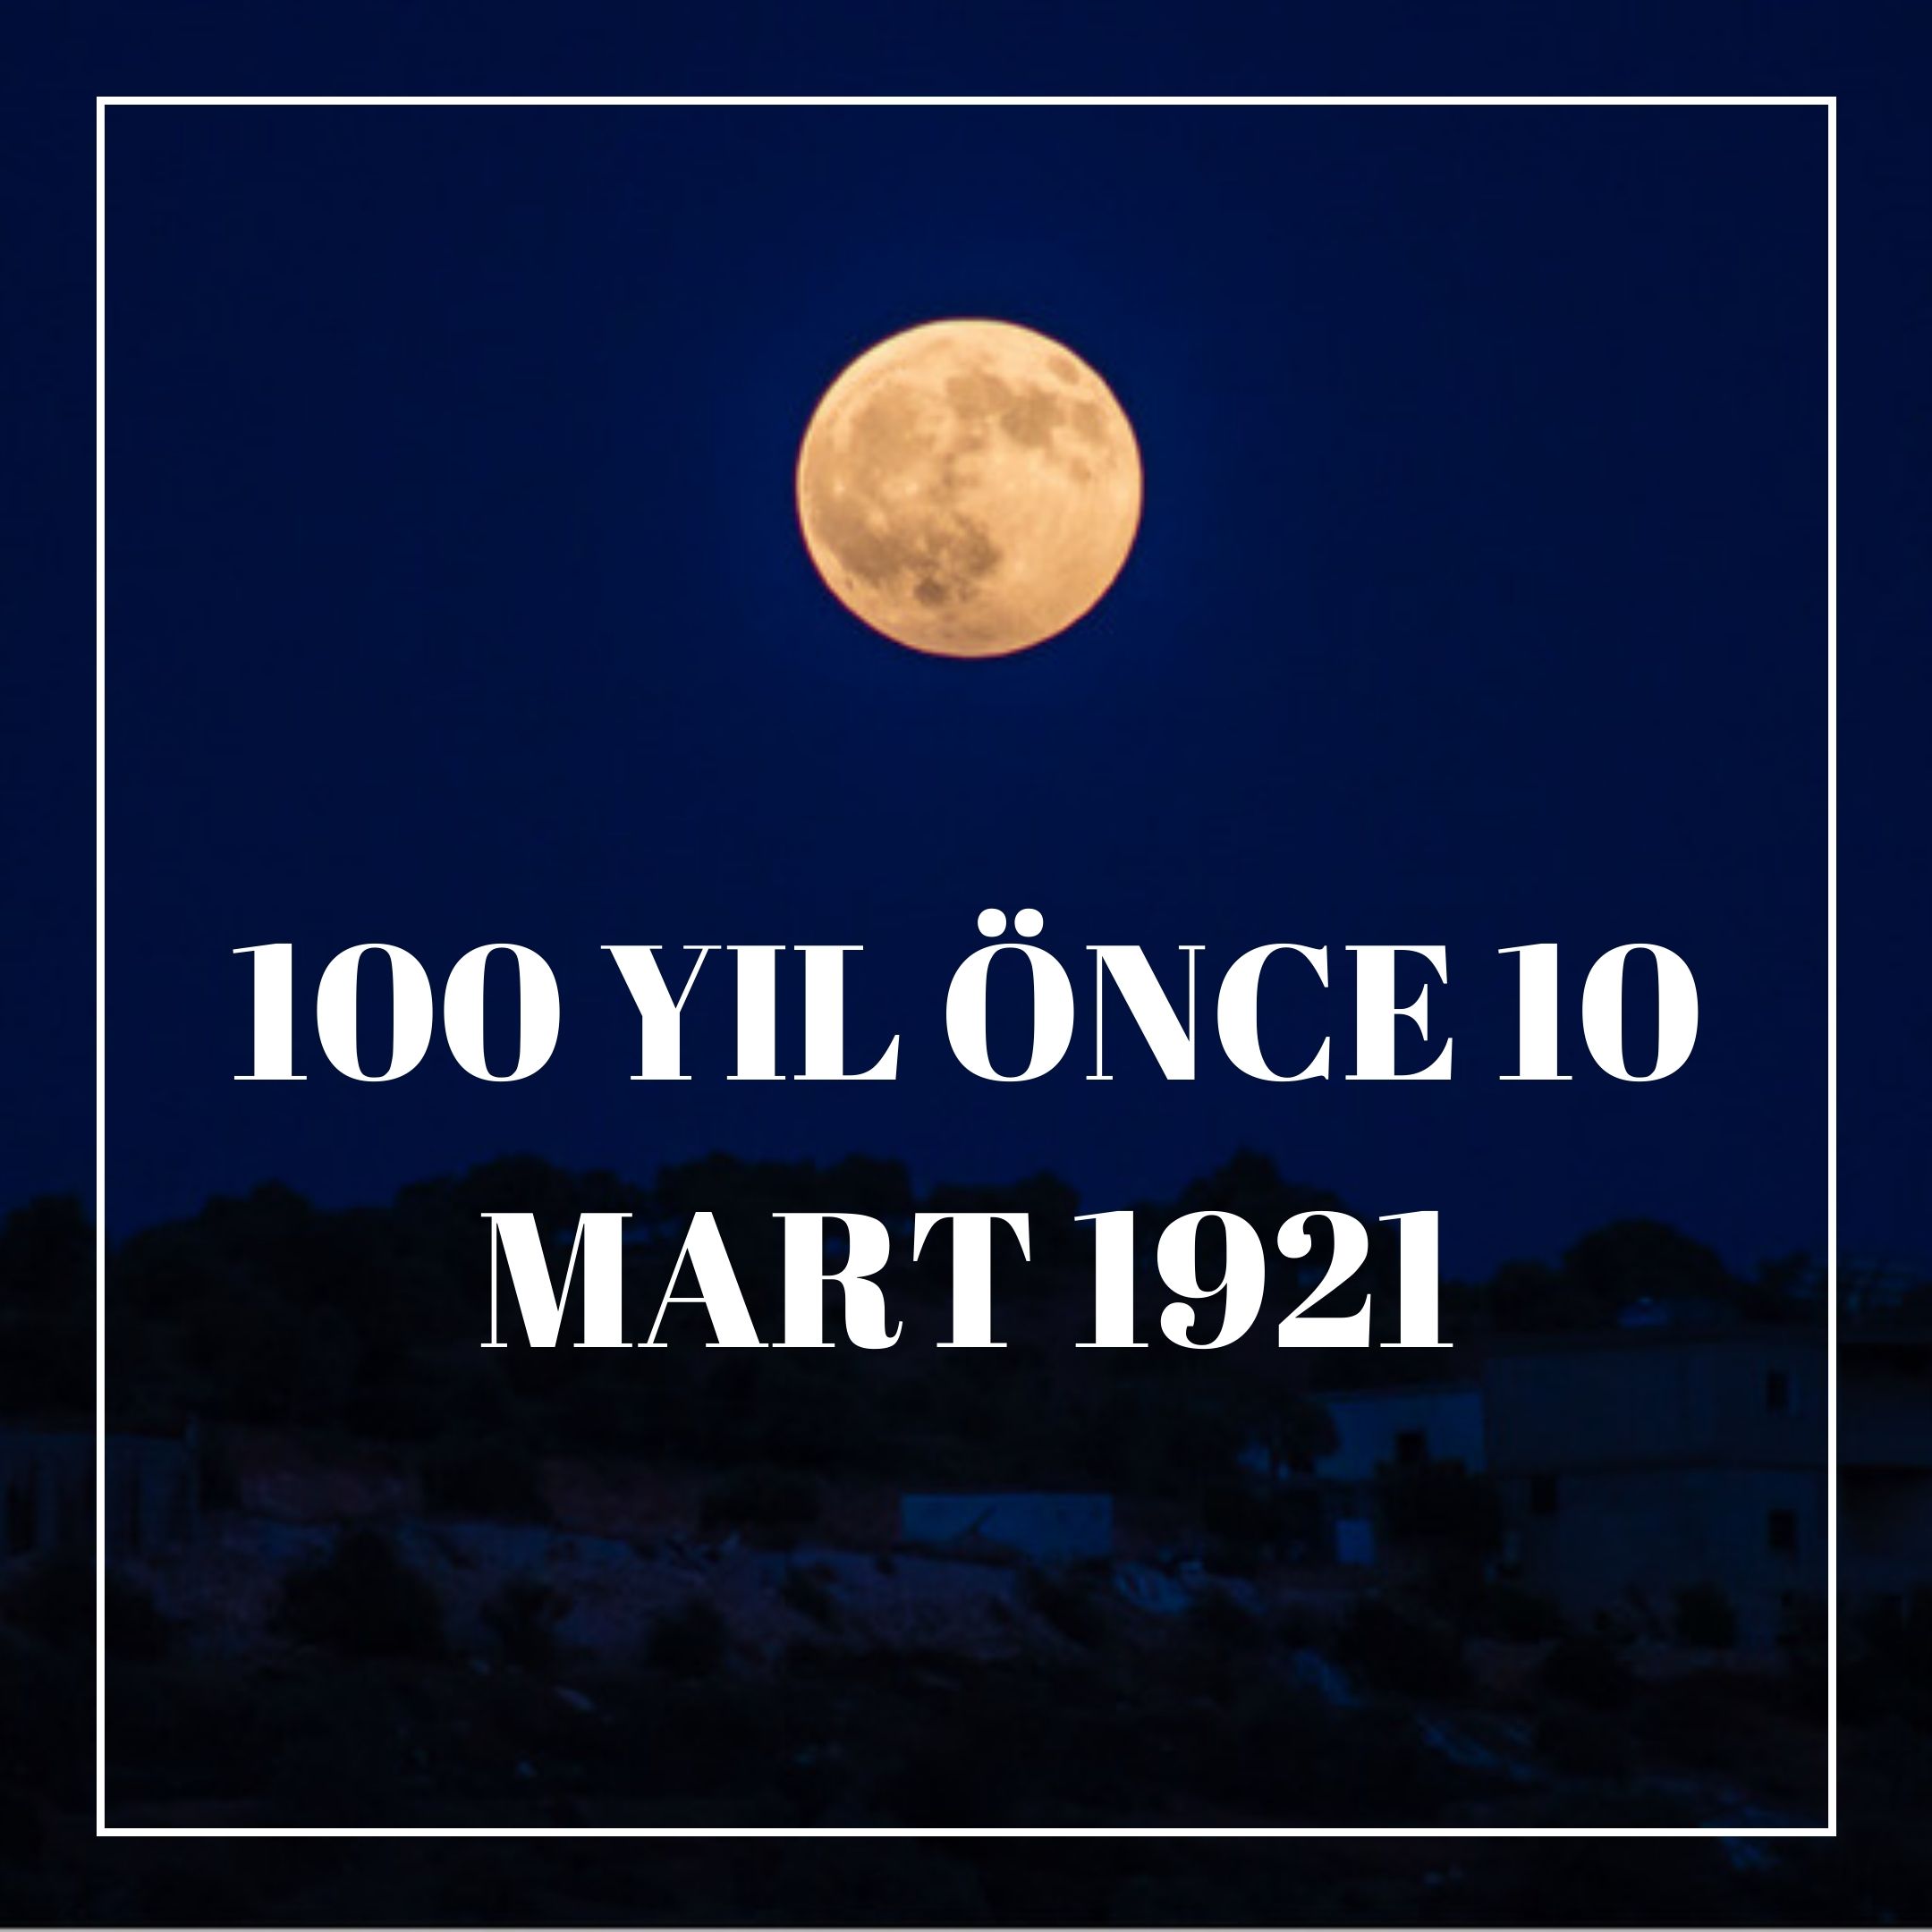 100 YIL ÖNCE 10 MART 1921